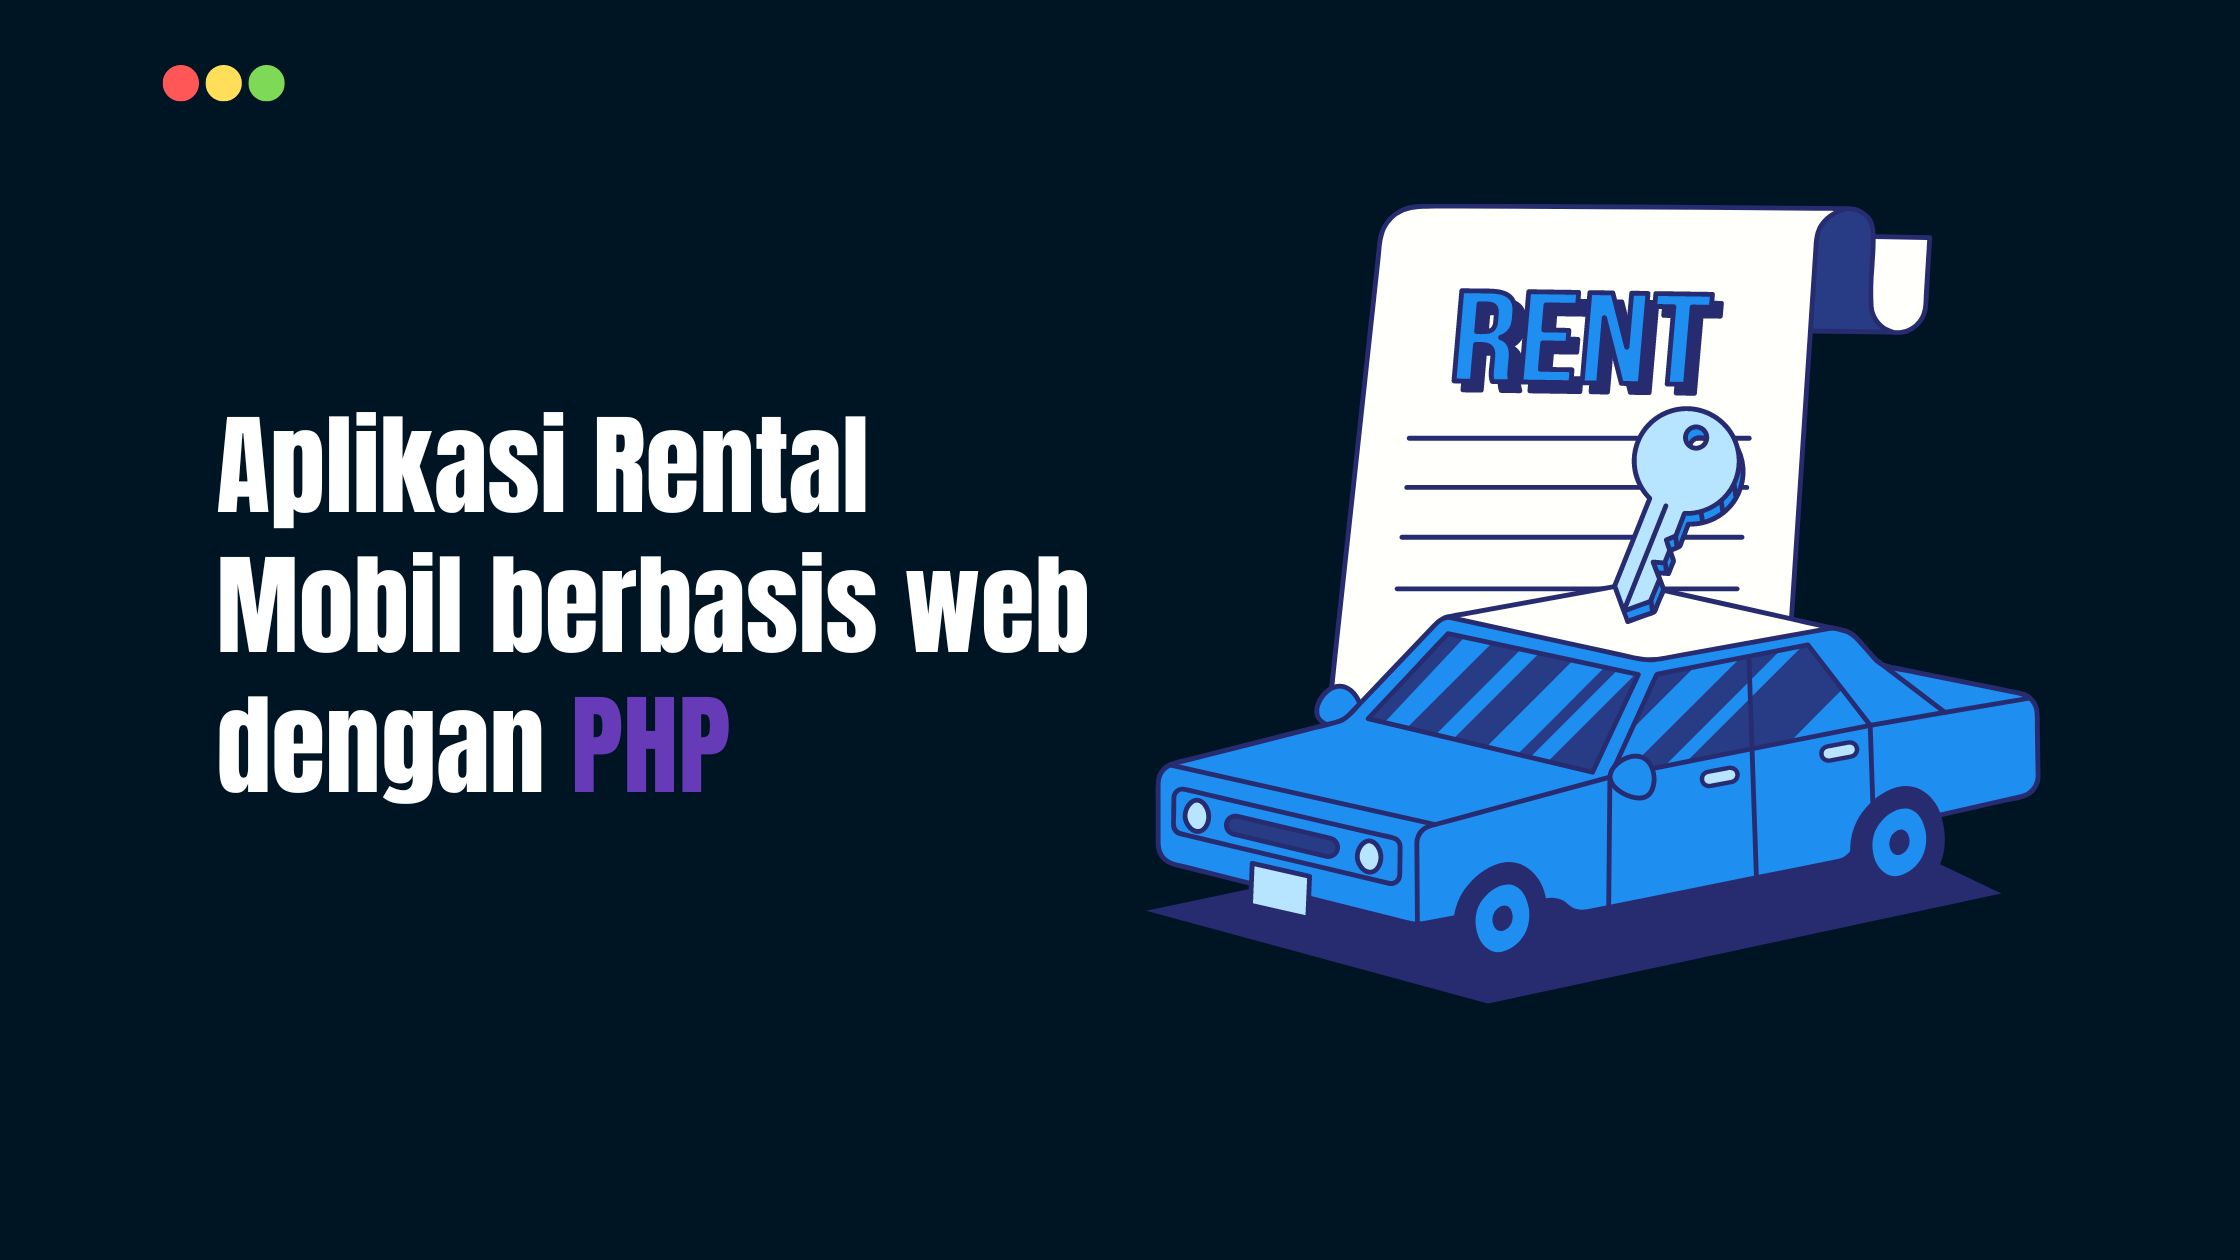 Aplikasi Rental Mobil berbasis web dengan PHP [Free Download]